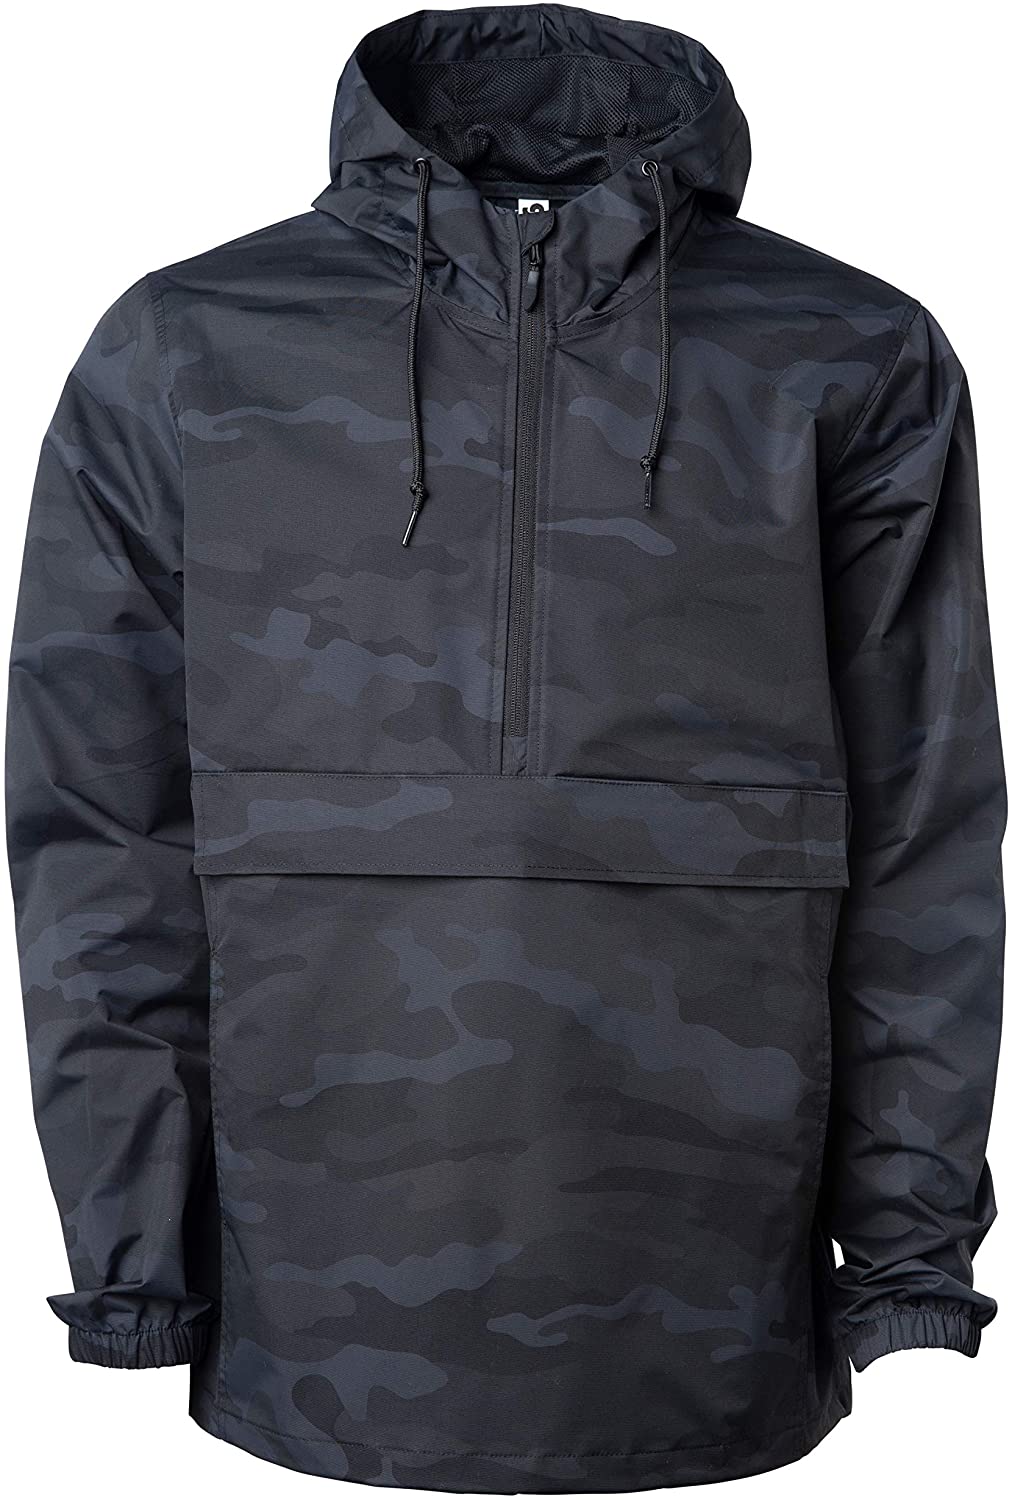 Global Blank Men/’s Hooded Raincoat Waterproof Jacket Zip Up Windbreaker Anorak